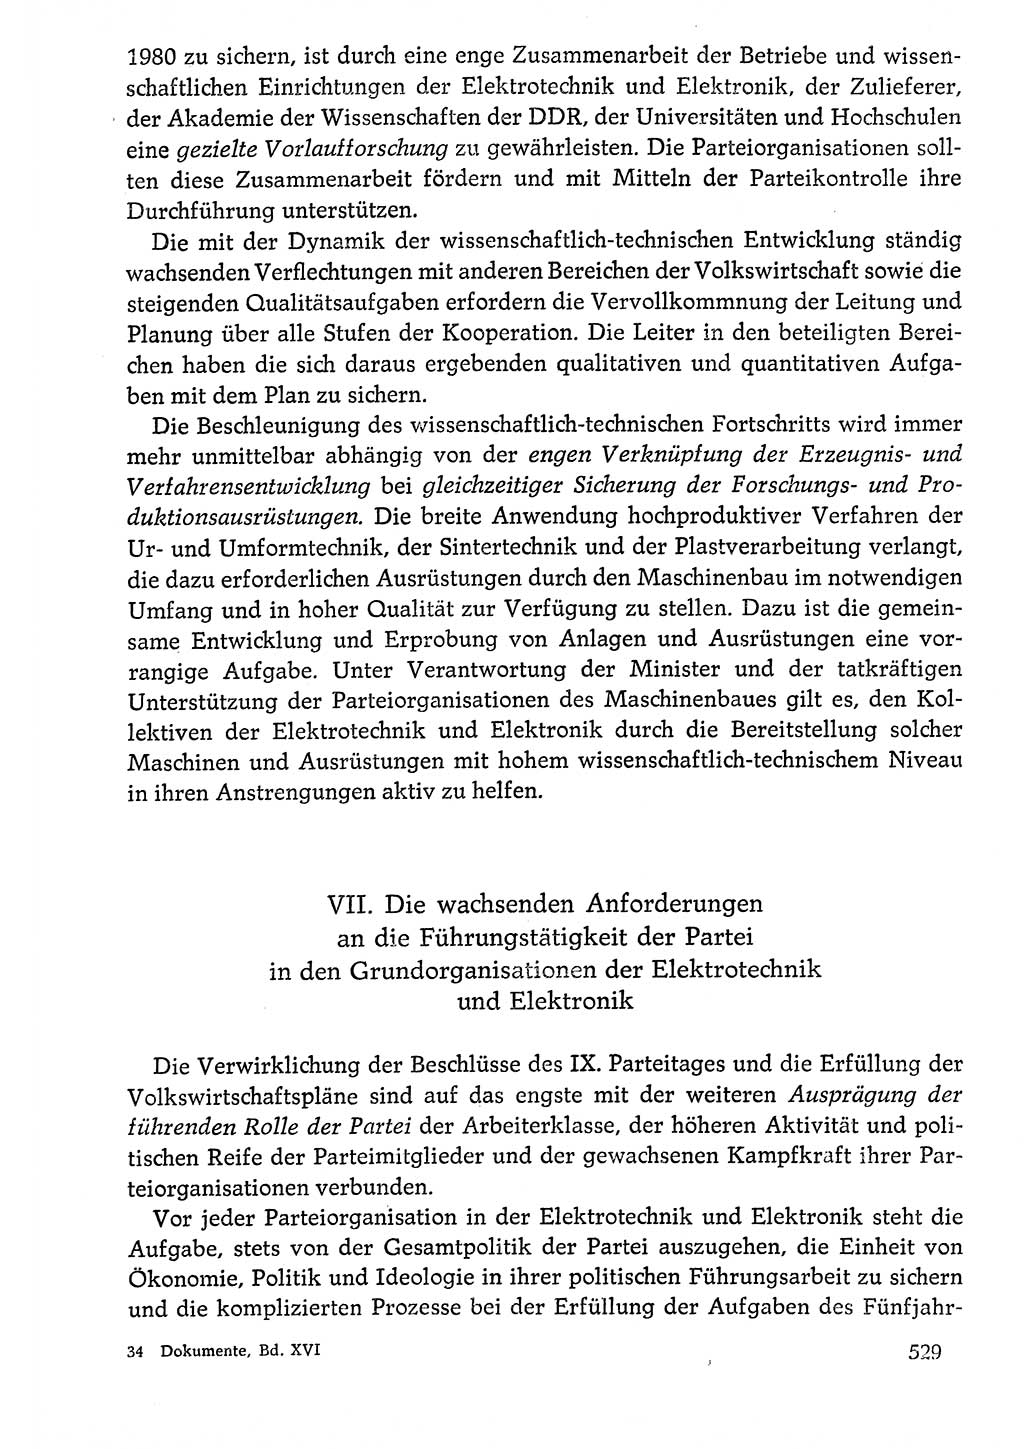 Dokumente der Sozialistischen Einheitspartei Deutschlands (SED) [Deutsche Demokratische Republik (DDR)] 1976-1977, Seite 529 (Dok. SED DDR 1976-1977, S. 529)